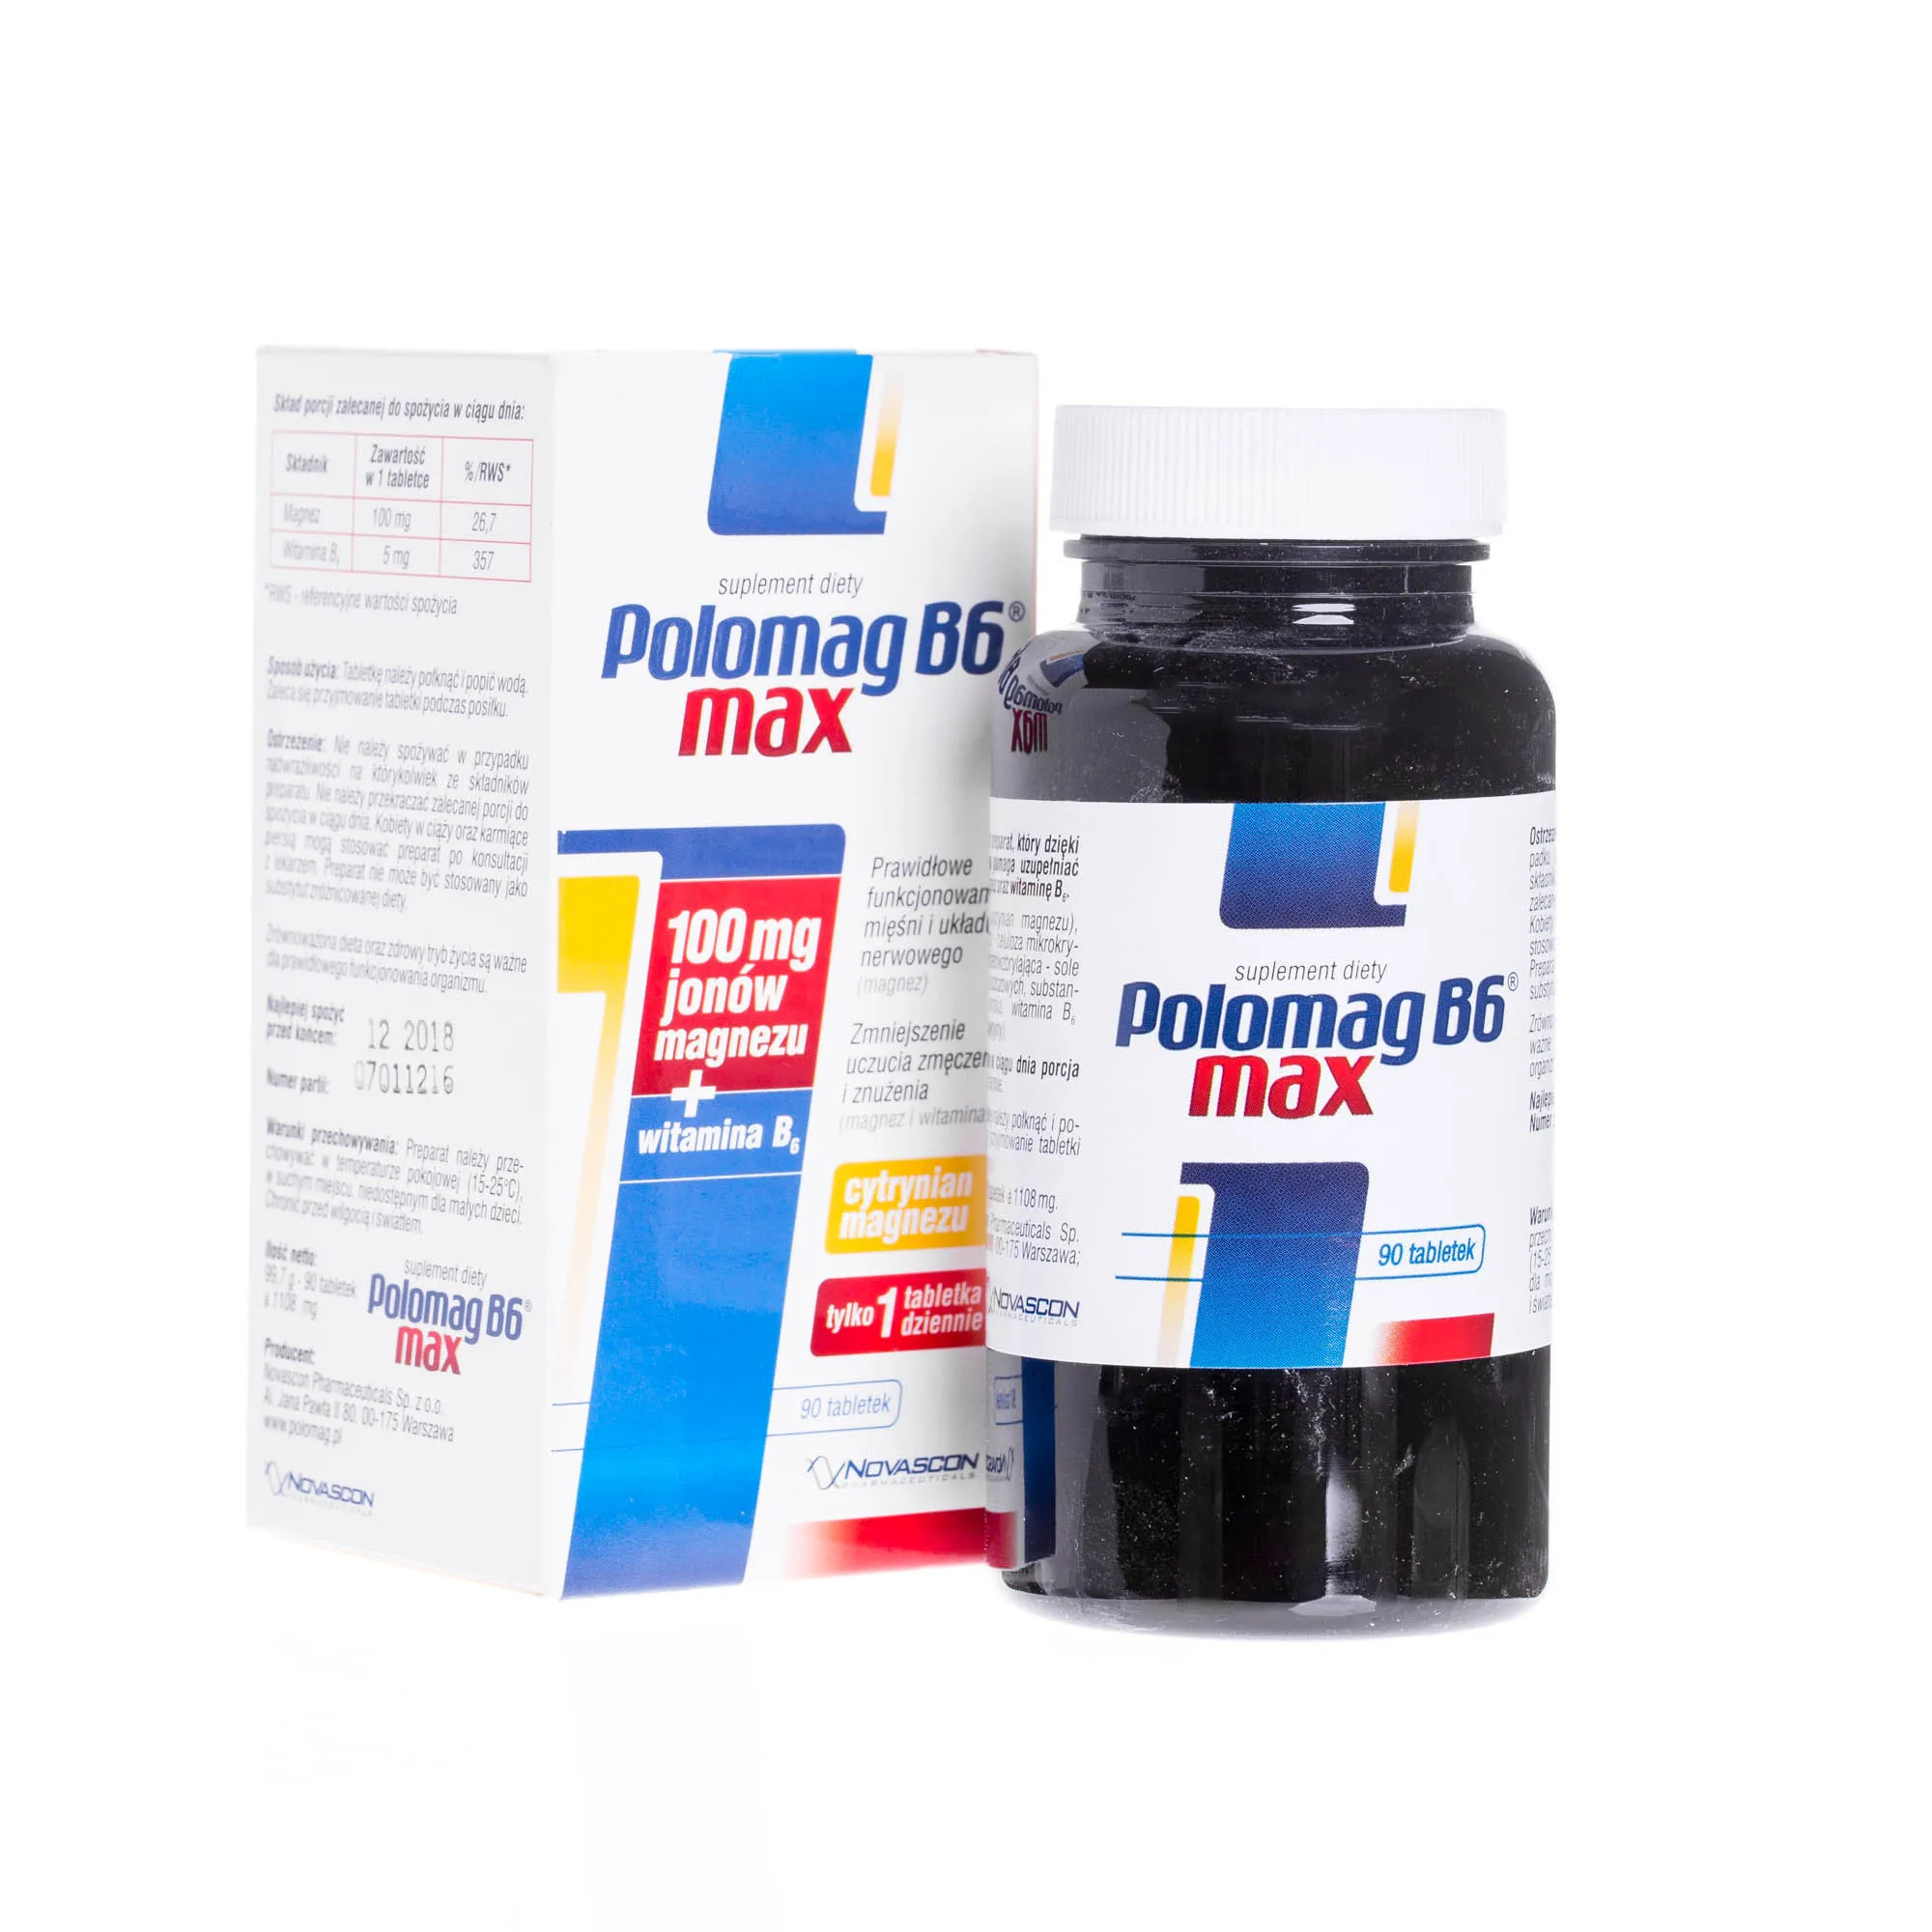 Polomag B6 Max, suplement diety zawierający 100 mg jonów magnezu + witaminę B6